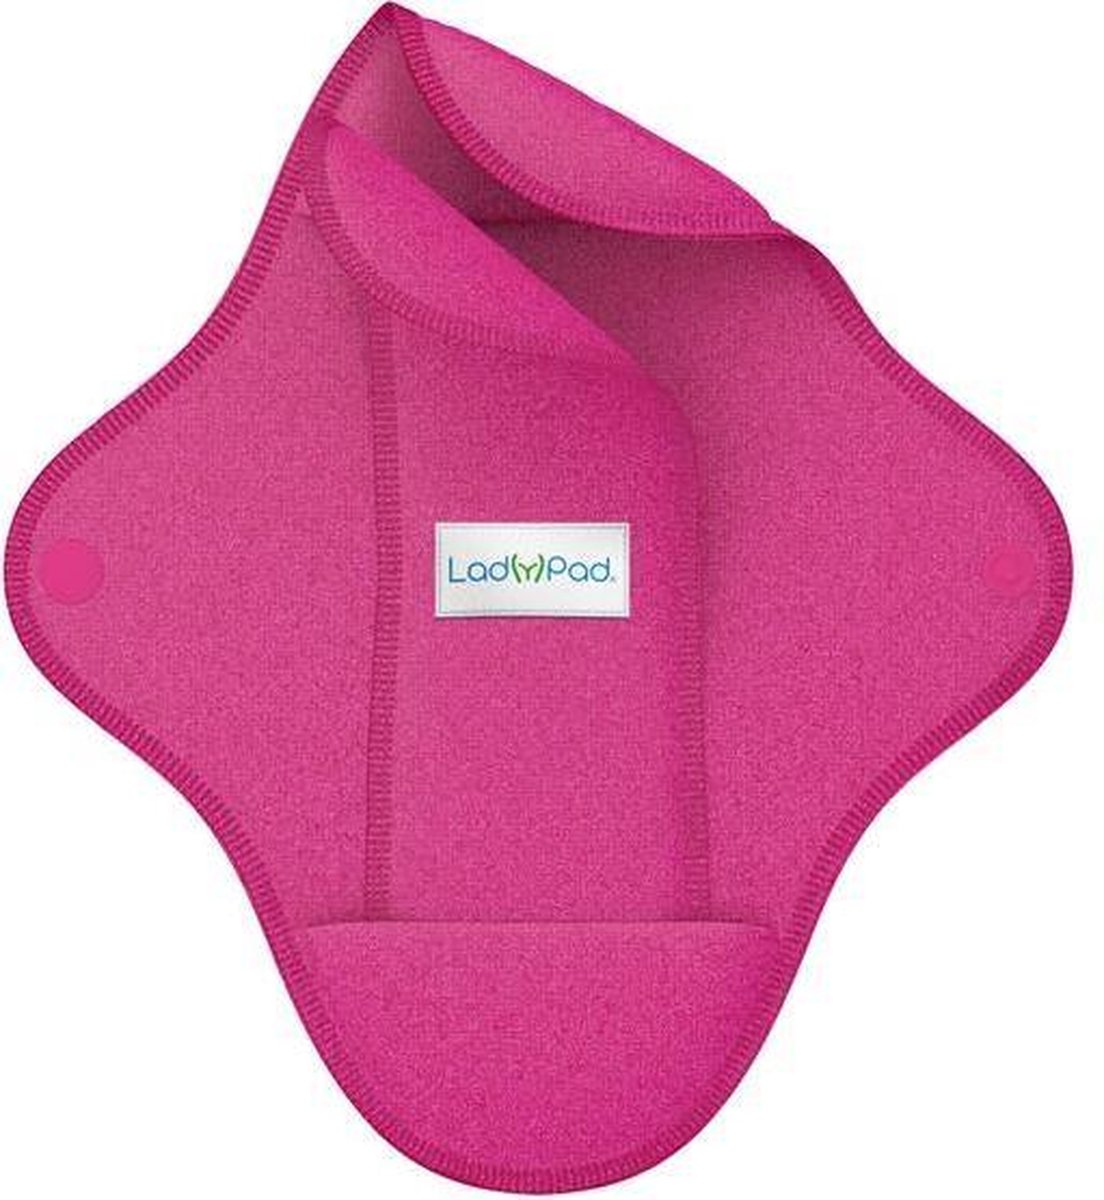 Ladypad Washable Sanitary Napkin Pad & Liner Fuchsia Size M